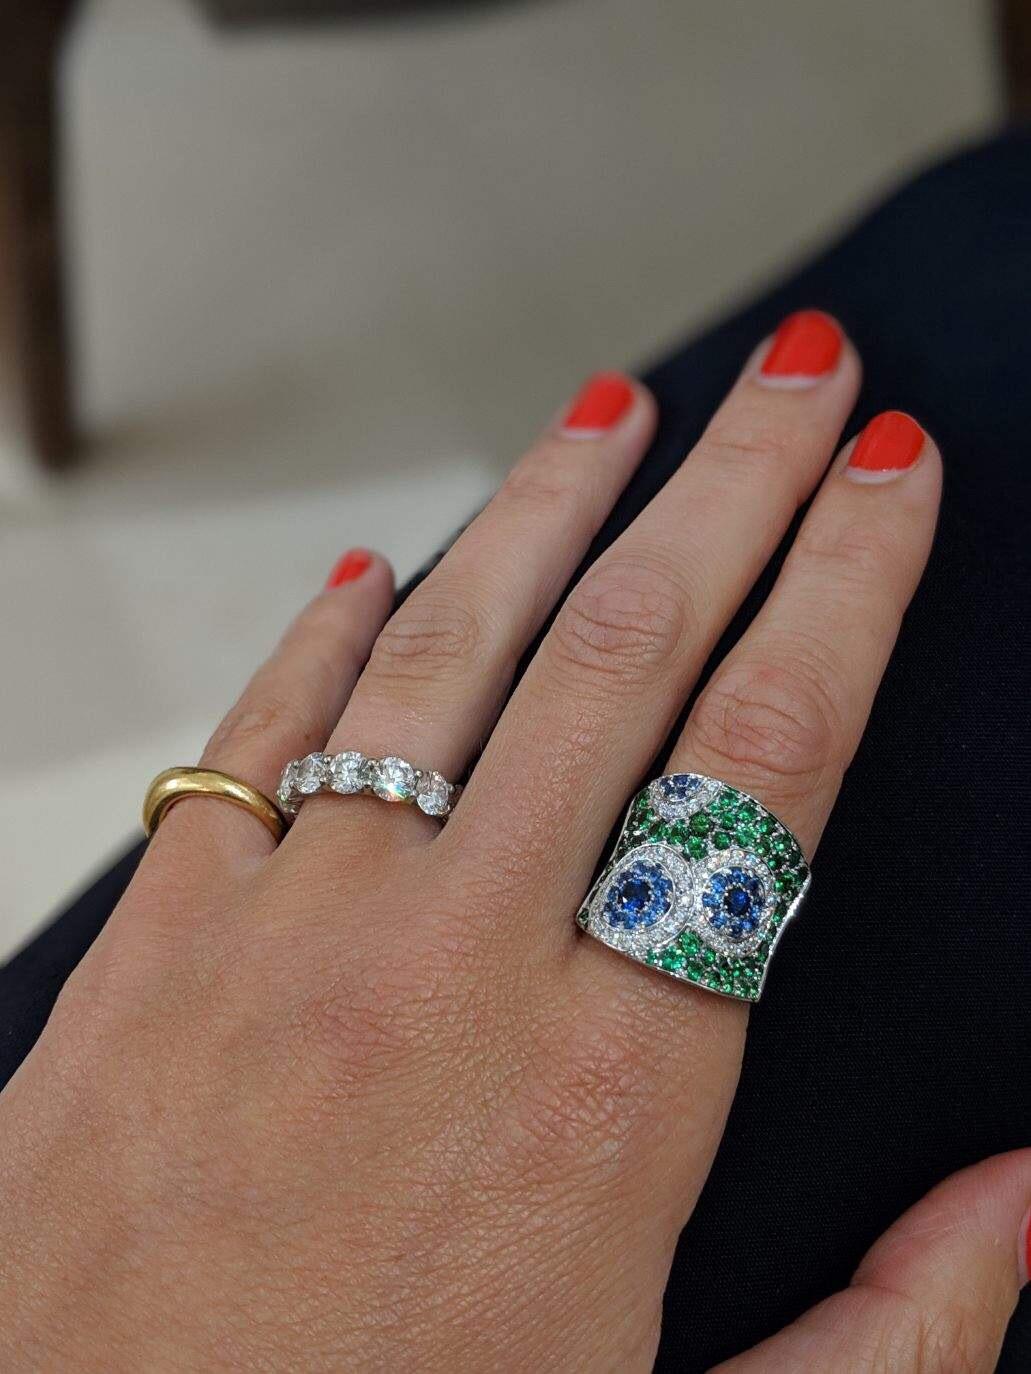 Dieser Ring von Cellini Jewelers zeigt ein Kaleidoskop aus weißen Diamanten und blauen Saphiren, die in einen konkav geformten Ring aus grünem Tsavorit eingefasst sind. Fassung aus 18 Karat Weißgold. 
Dieses skurrile Design ist Teil der